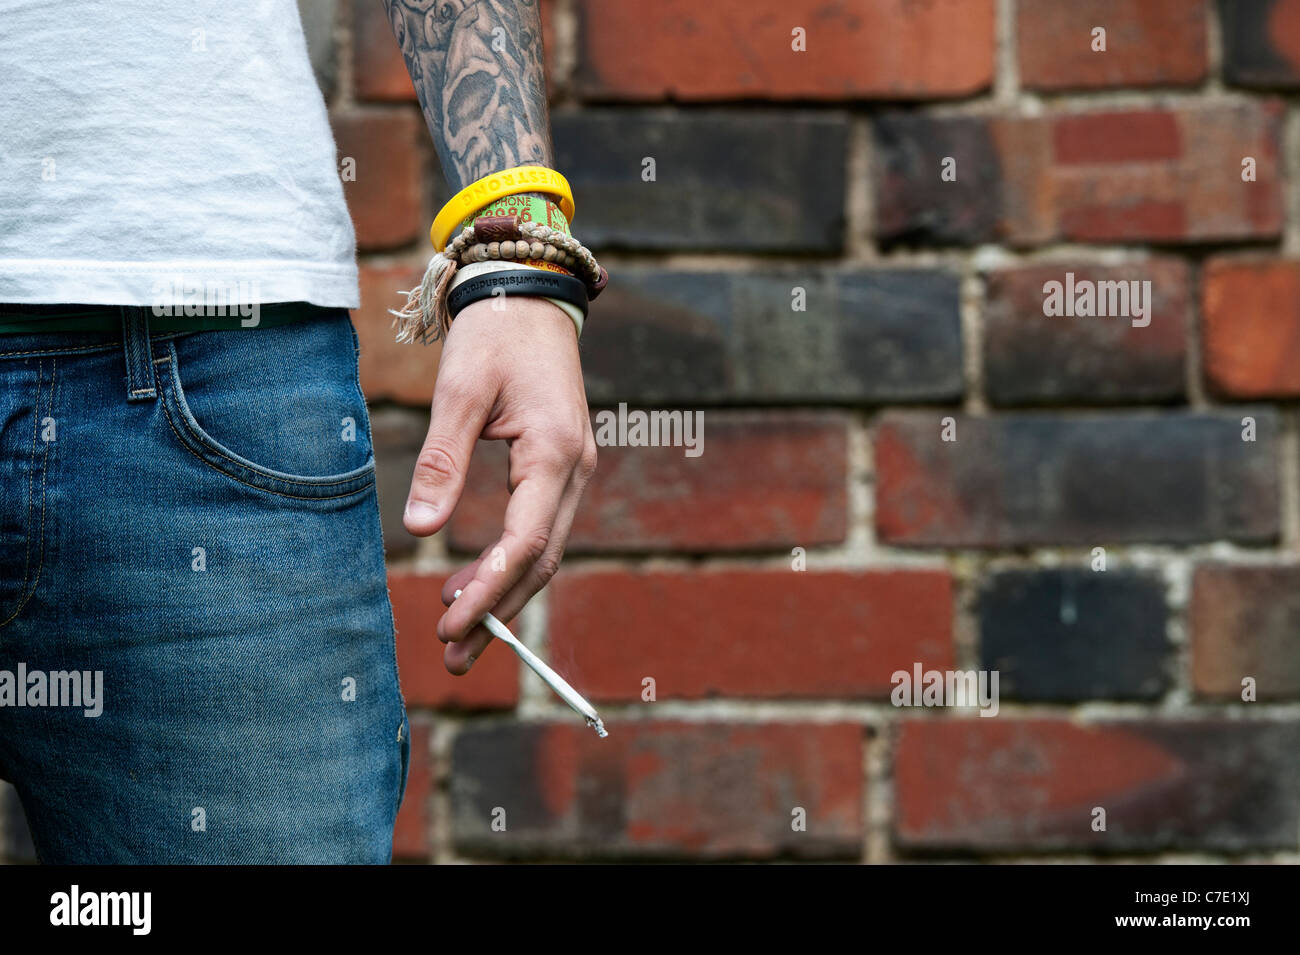 L'adolescent tatoué tenant un joint de cannabis Banque D'Images